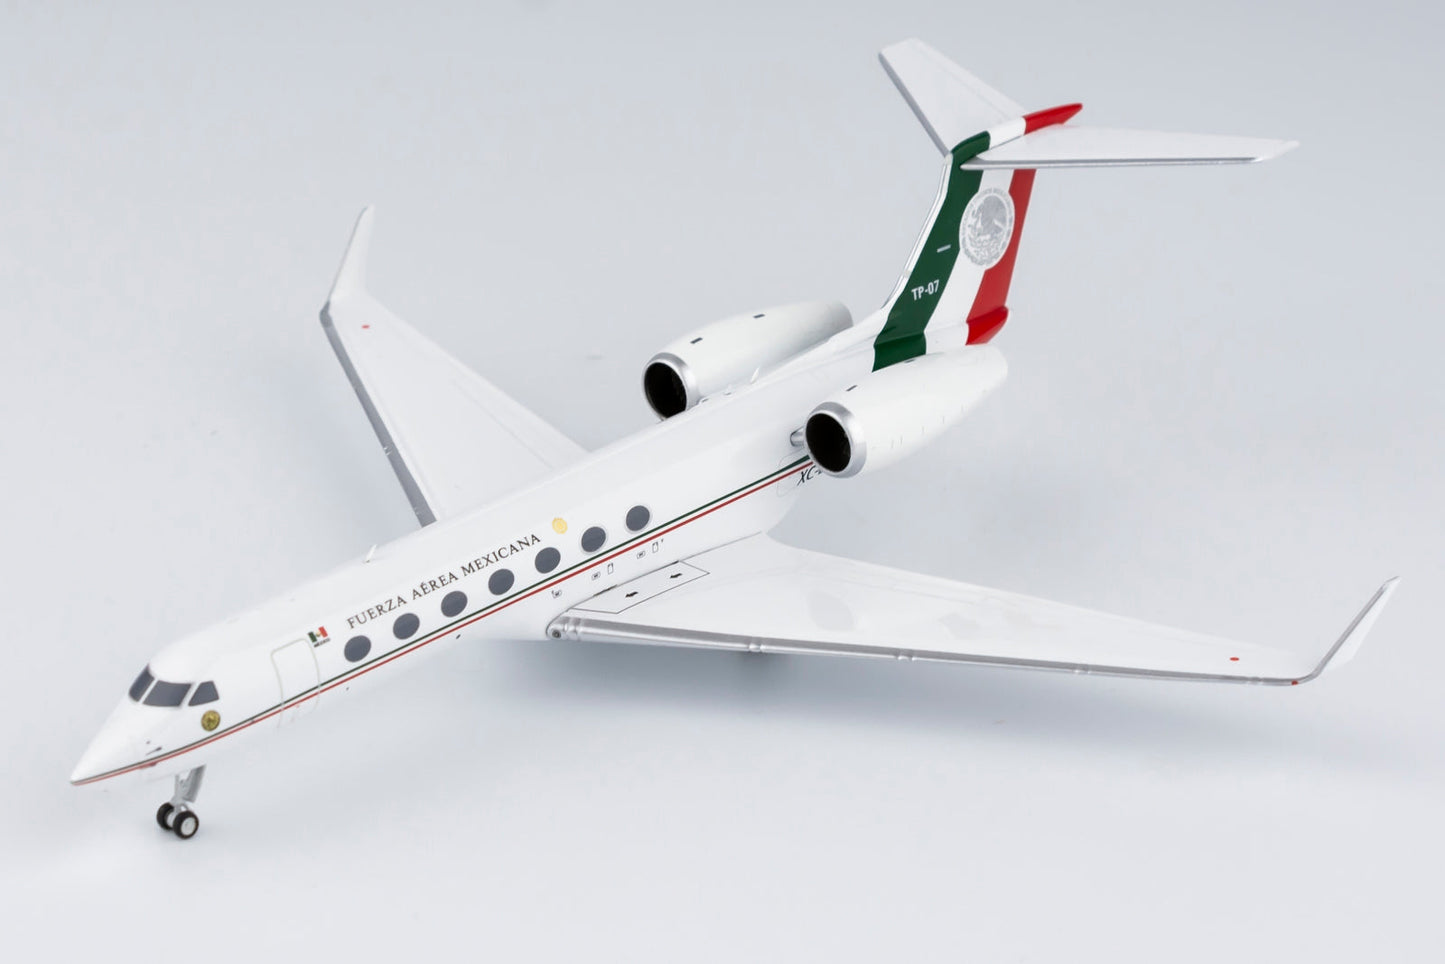 1/200 Mexican Air Force G550 NG Models 75013